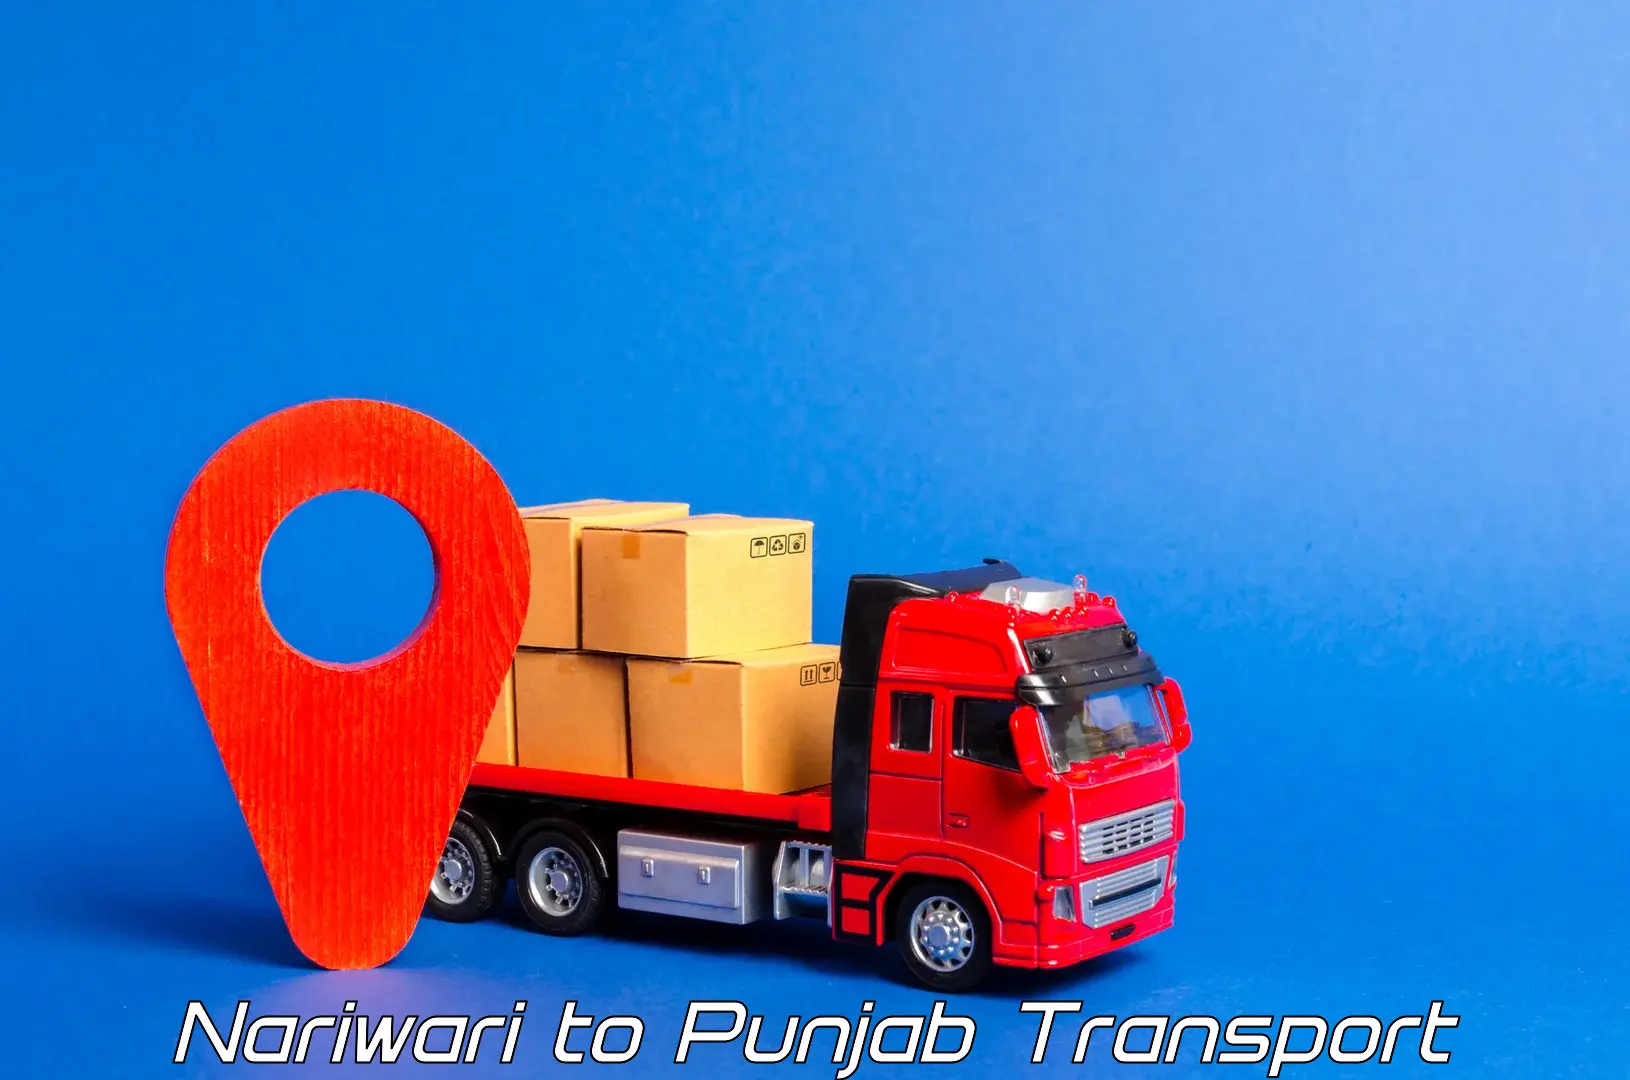 Nearest transport service Nariwari to Dinanagar